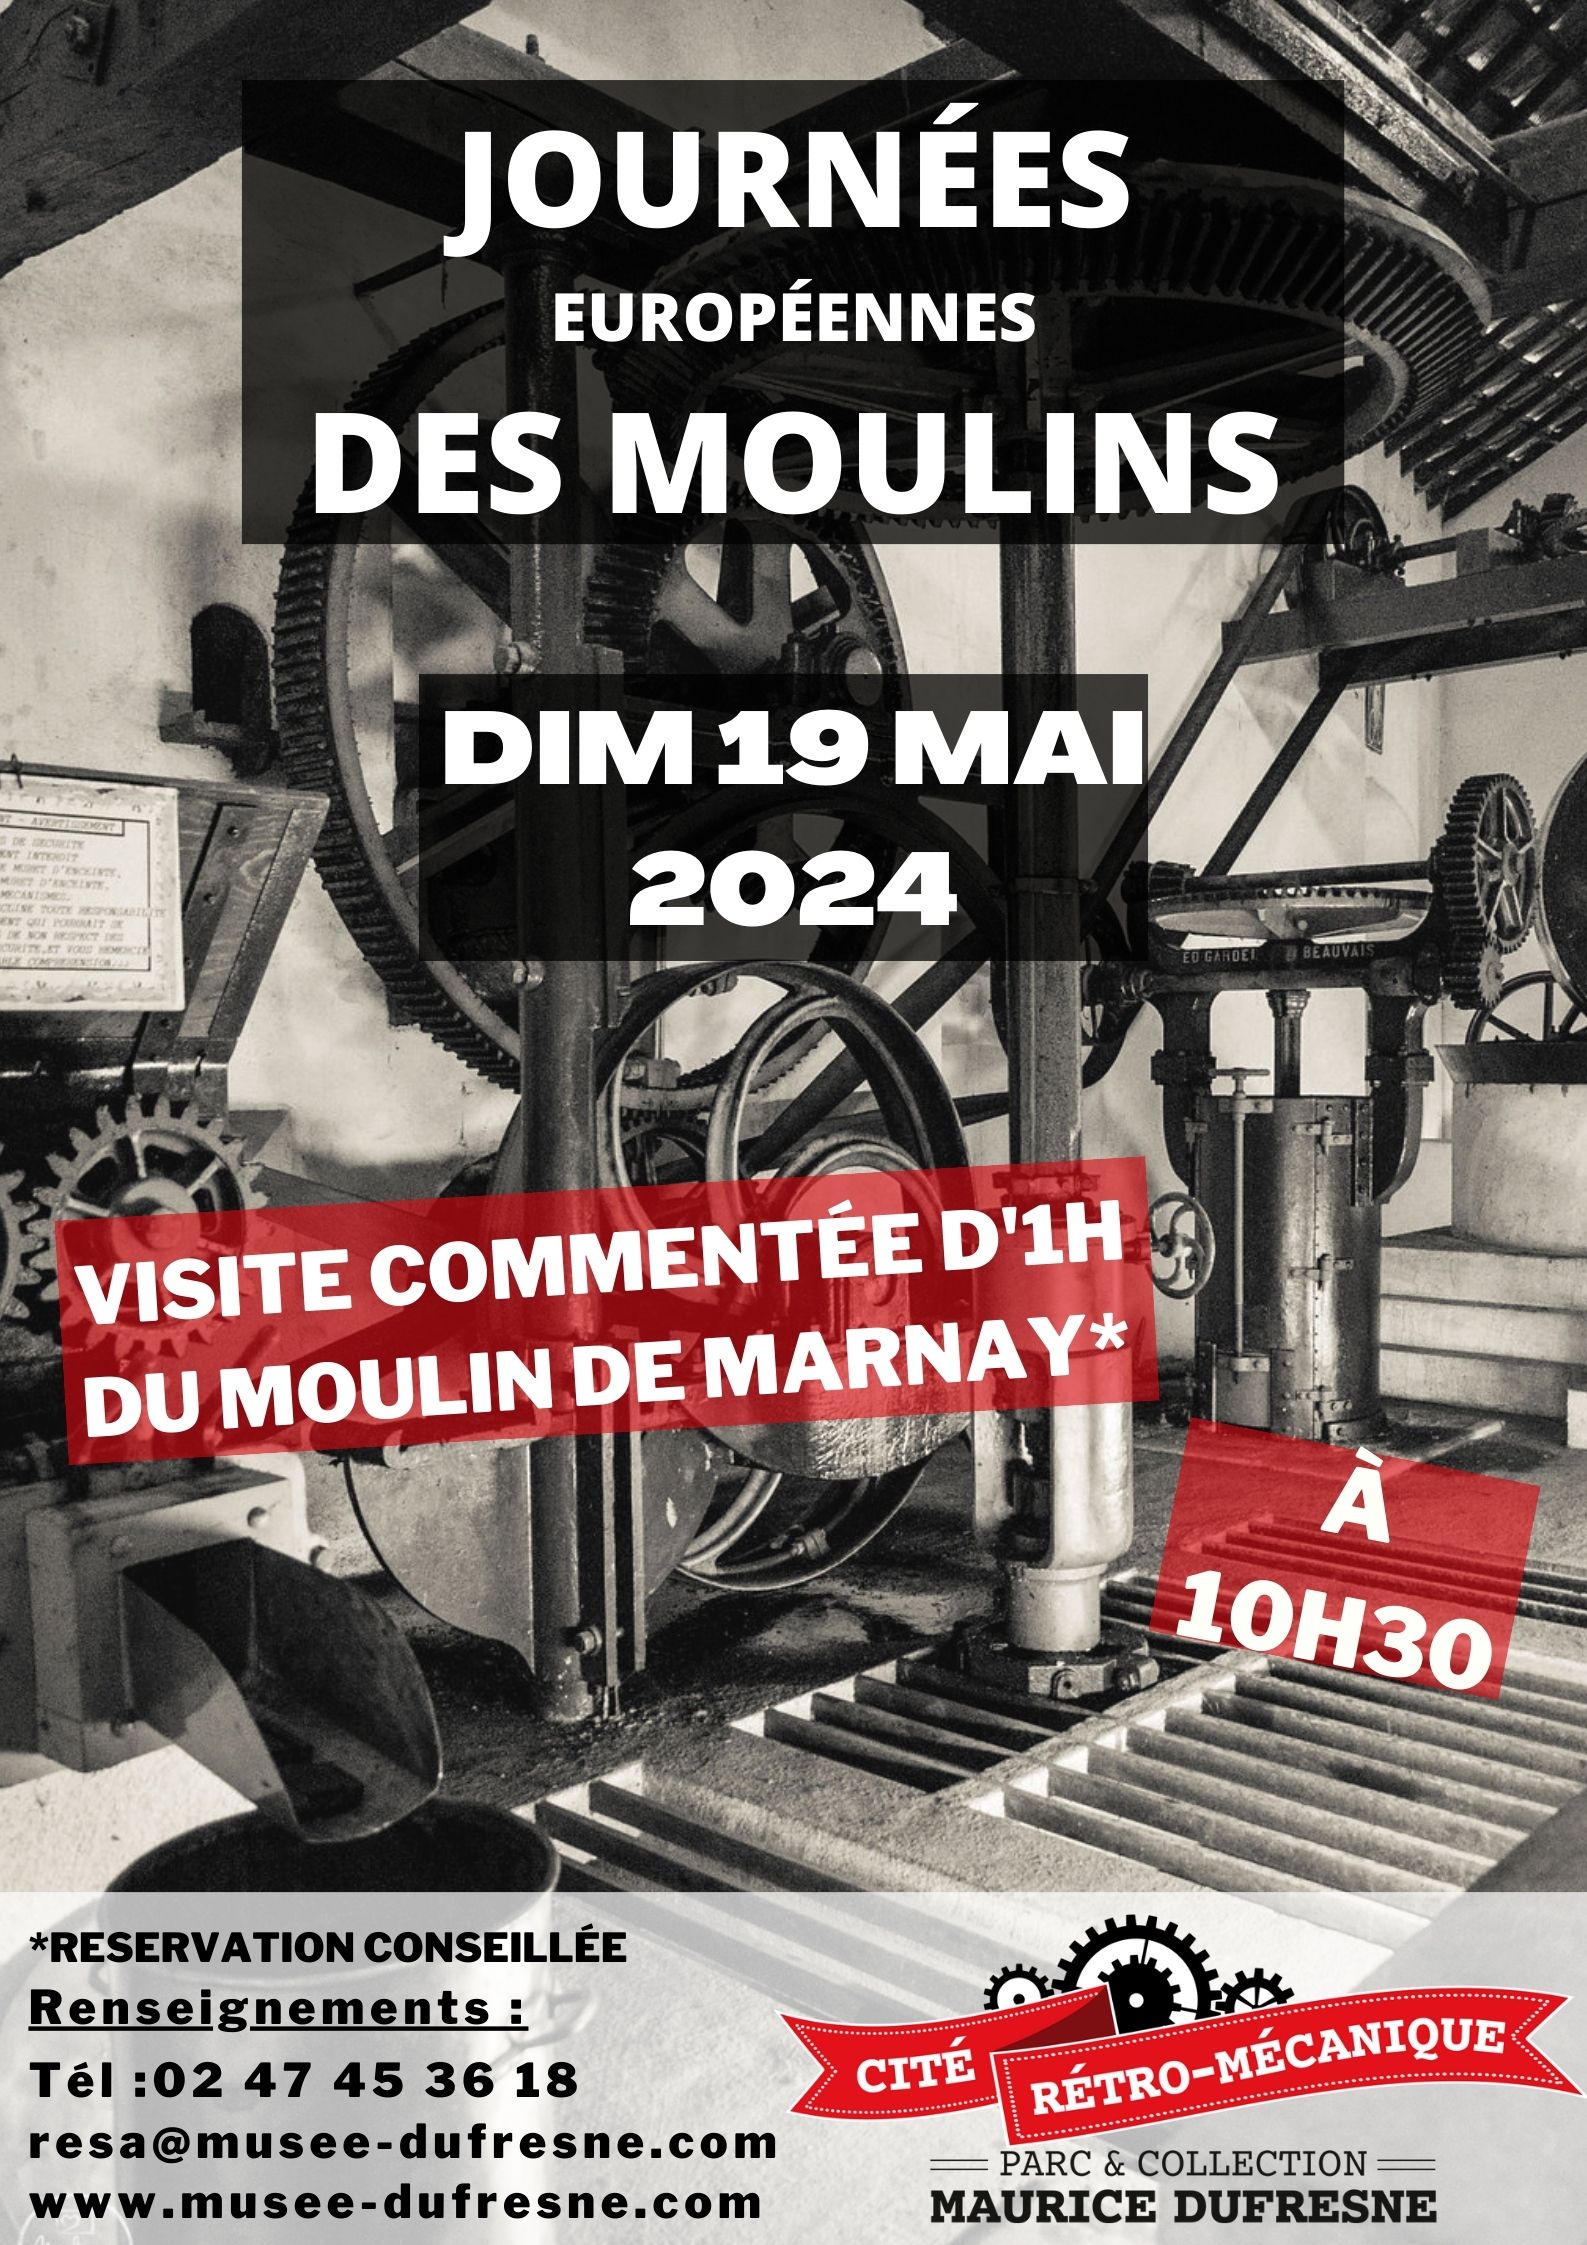 Moulin de Marnay – Cité Rétro-Mécanique Maurice Dufresne